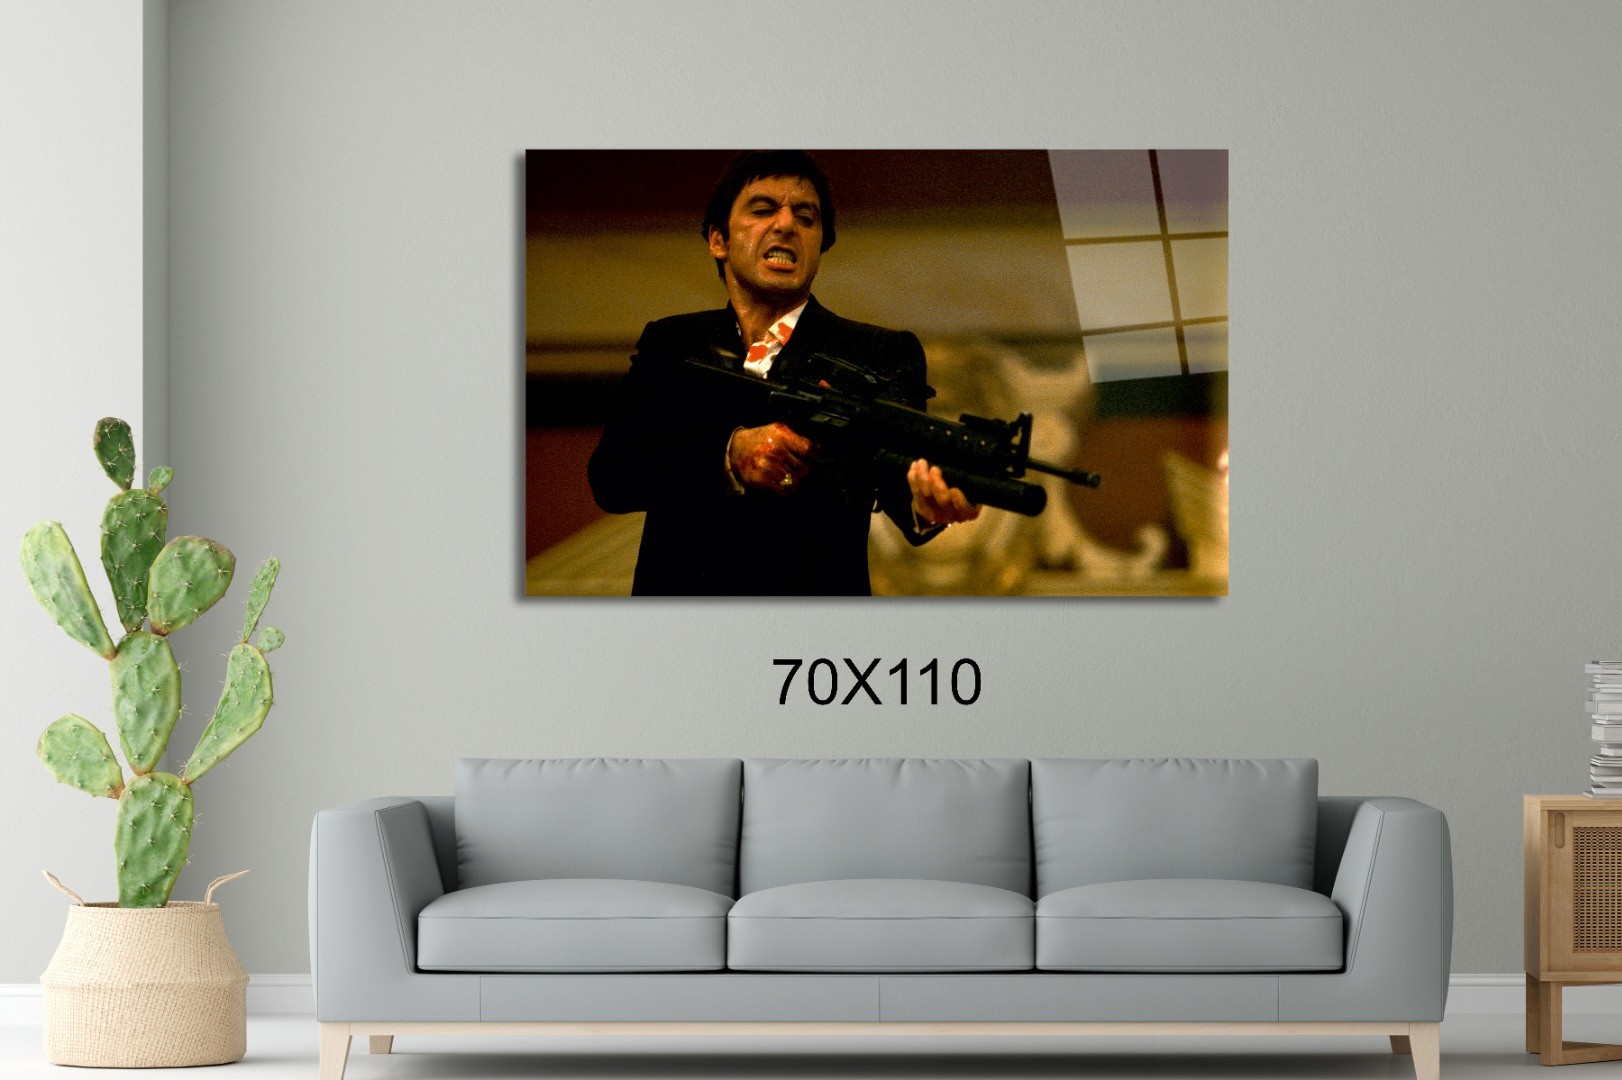 Sinirli Scarface - Tony Montana Sinema Ve Ünlüler Cam Tablo #PCT0944